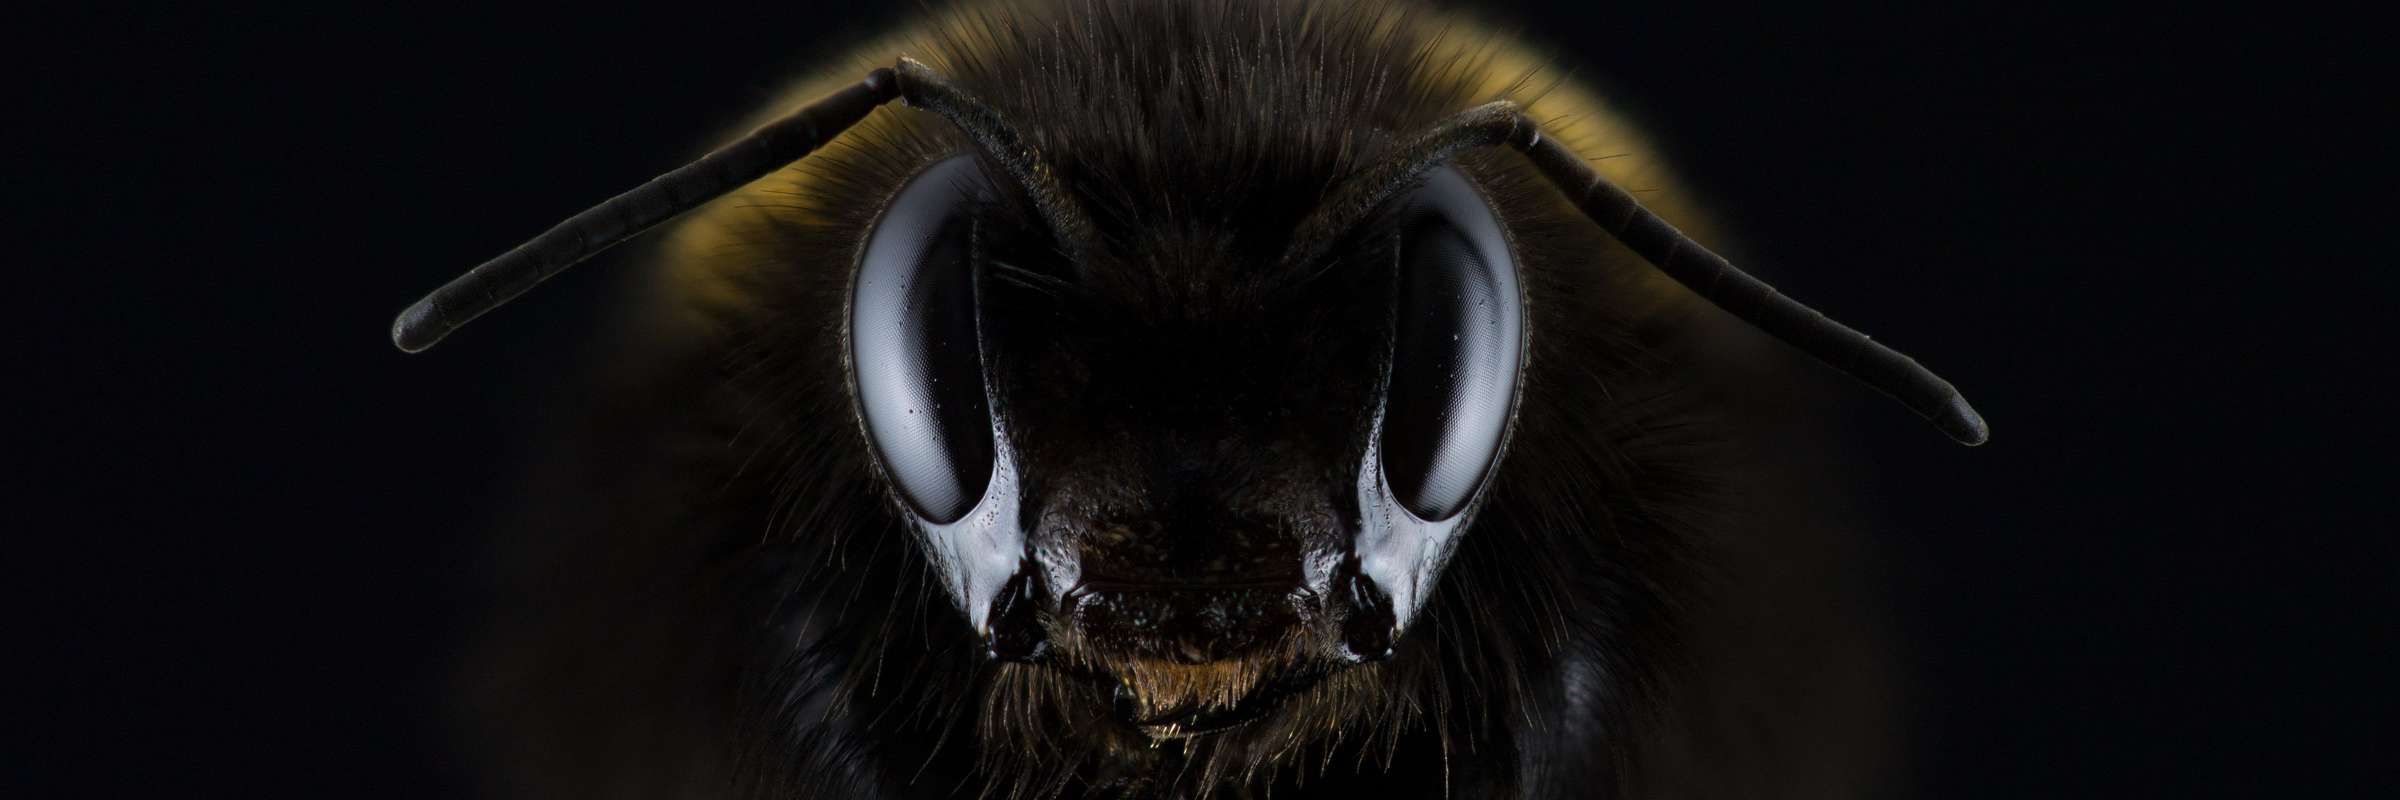 Detailansicht einer Biene